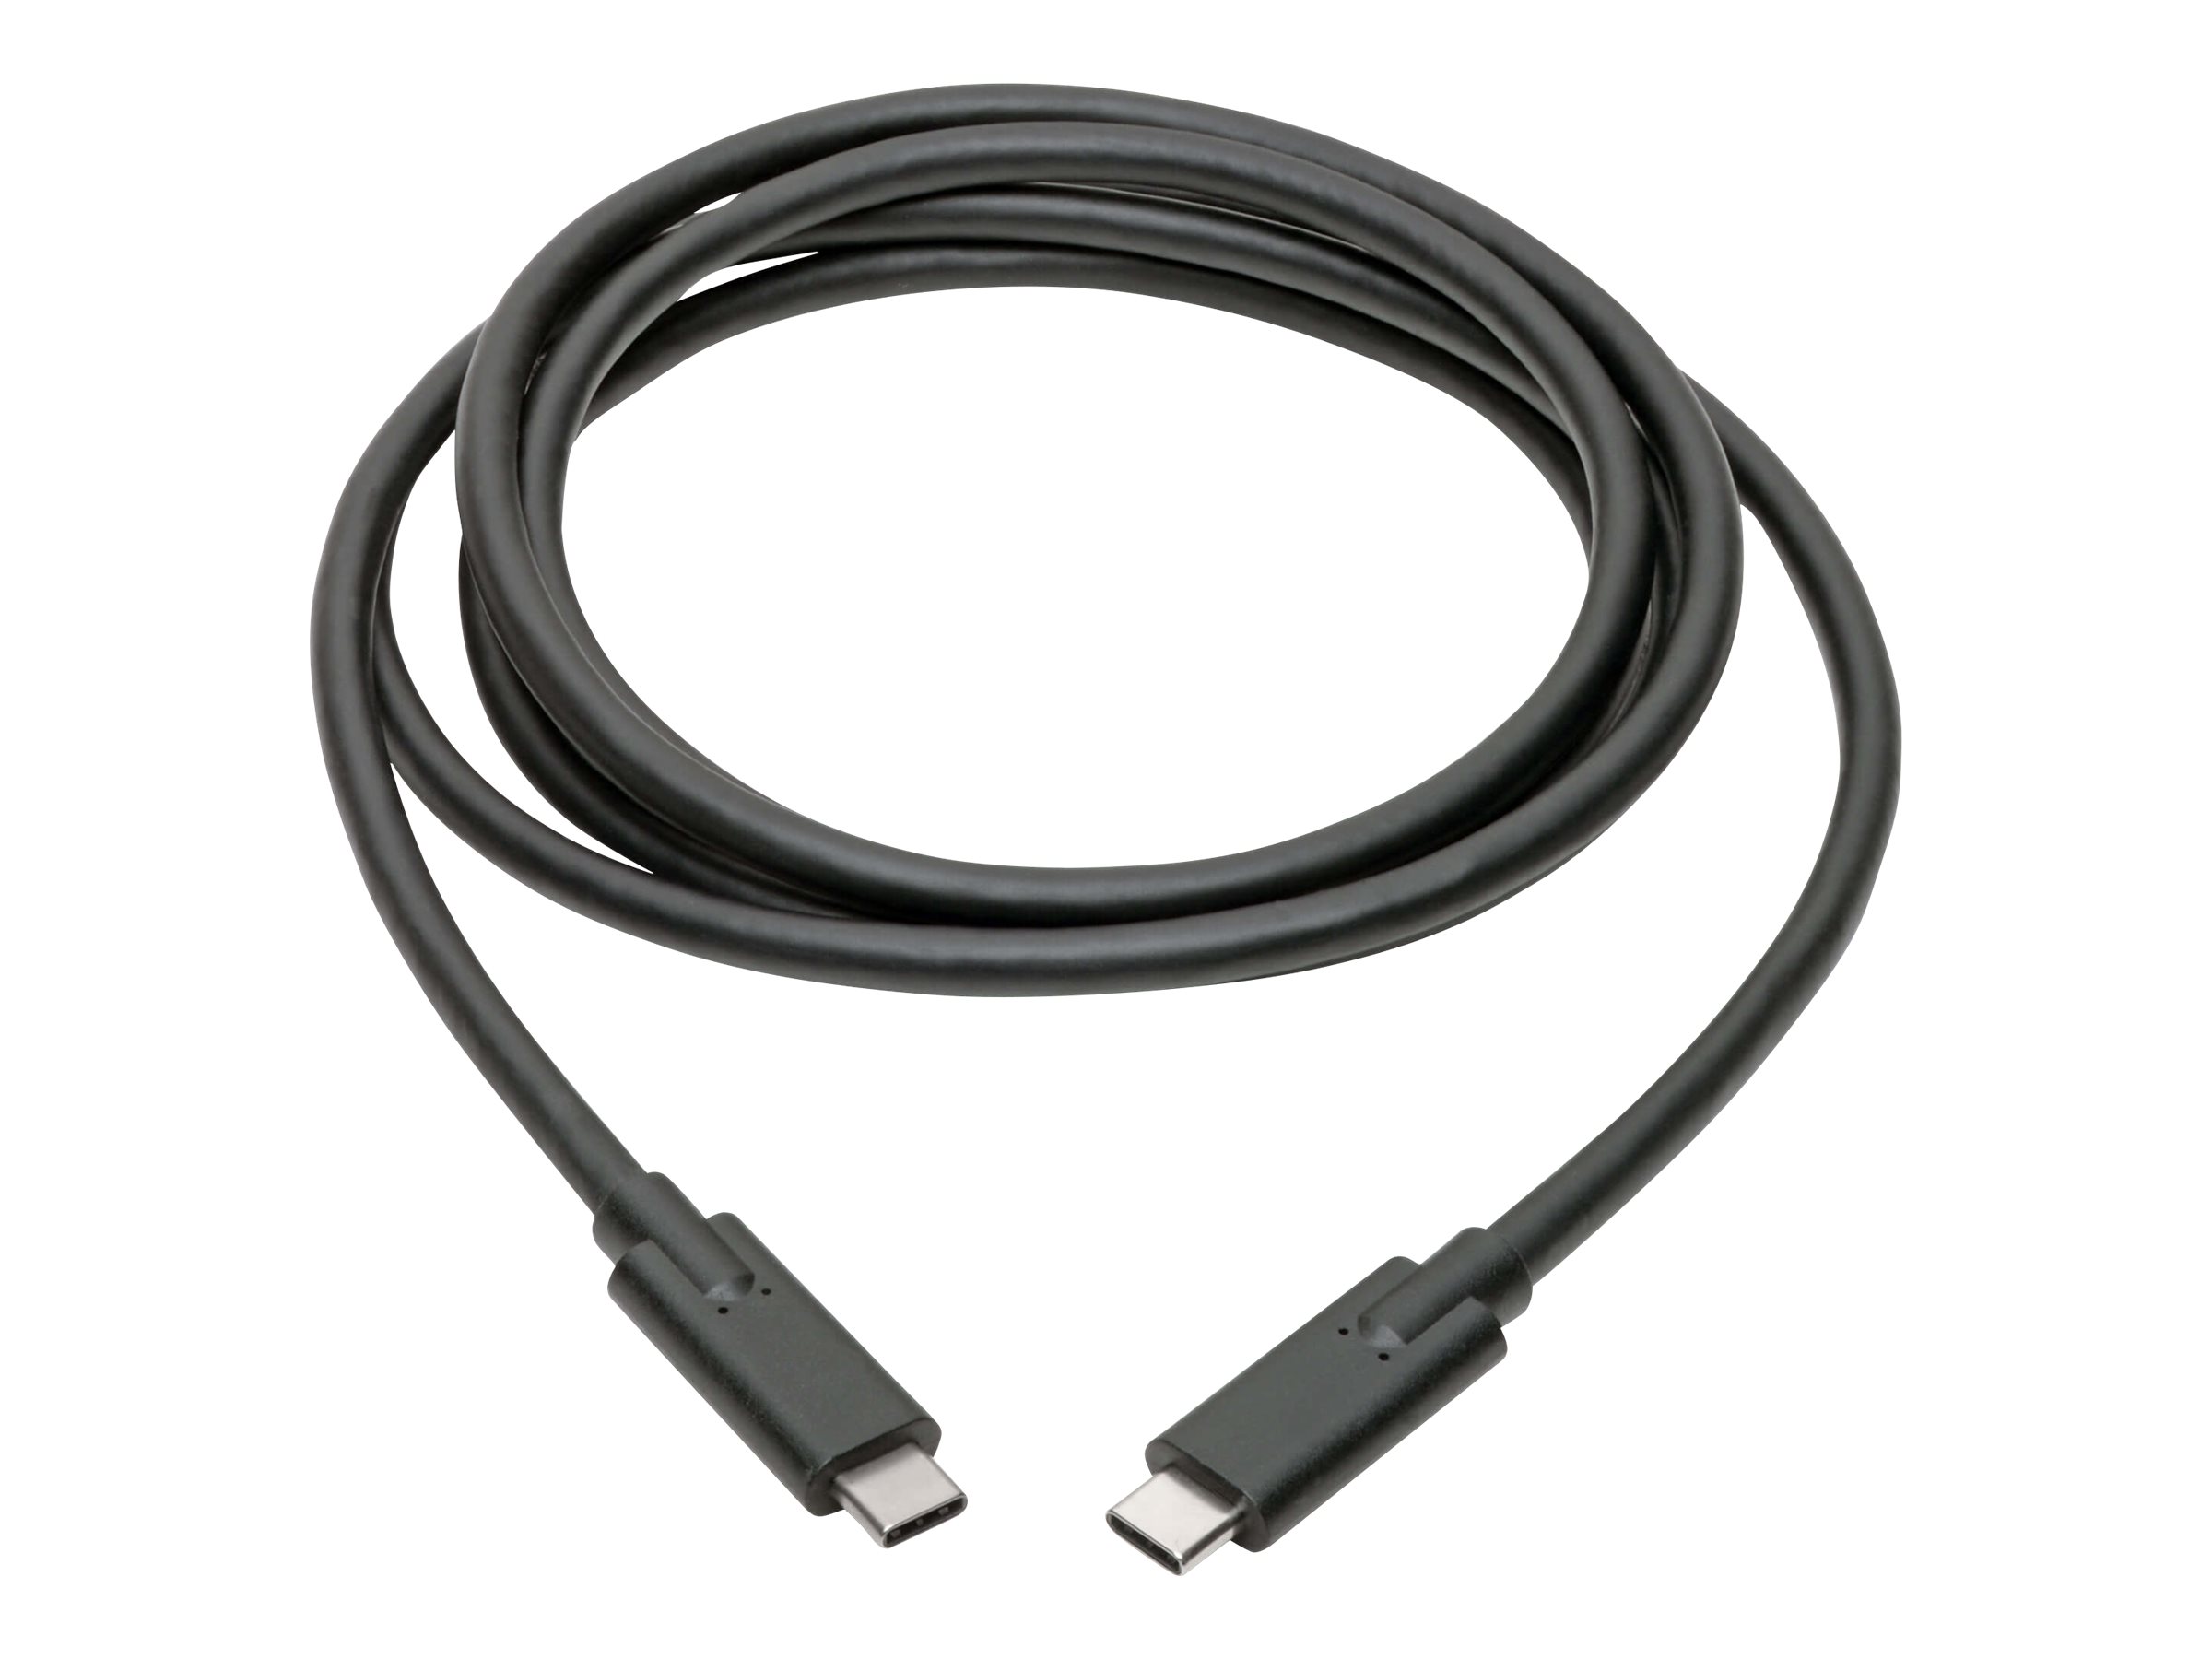 Eaton Tripp Lite Series USB-C Cable (M/M) - USB 3.2, Gen 1 (5 Gbps), 5A Rating, Thunderbolt 3 Compatible, 6 ft. (1.83 m) - Câble USB - 24 pin USB-C (M) pour 24 pin USB-C (M) - USB 3.1 Gen 1 / Thunderbolt 3 - 1.8 m - noir - U420-006-5A - Câbles USB